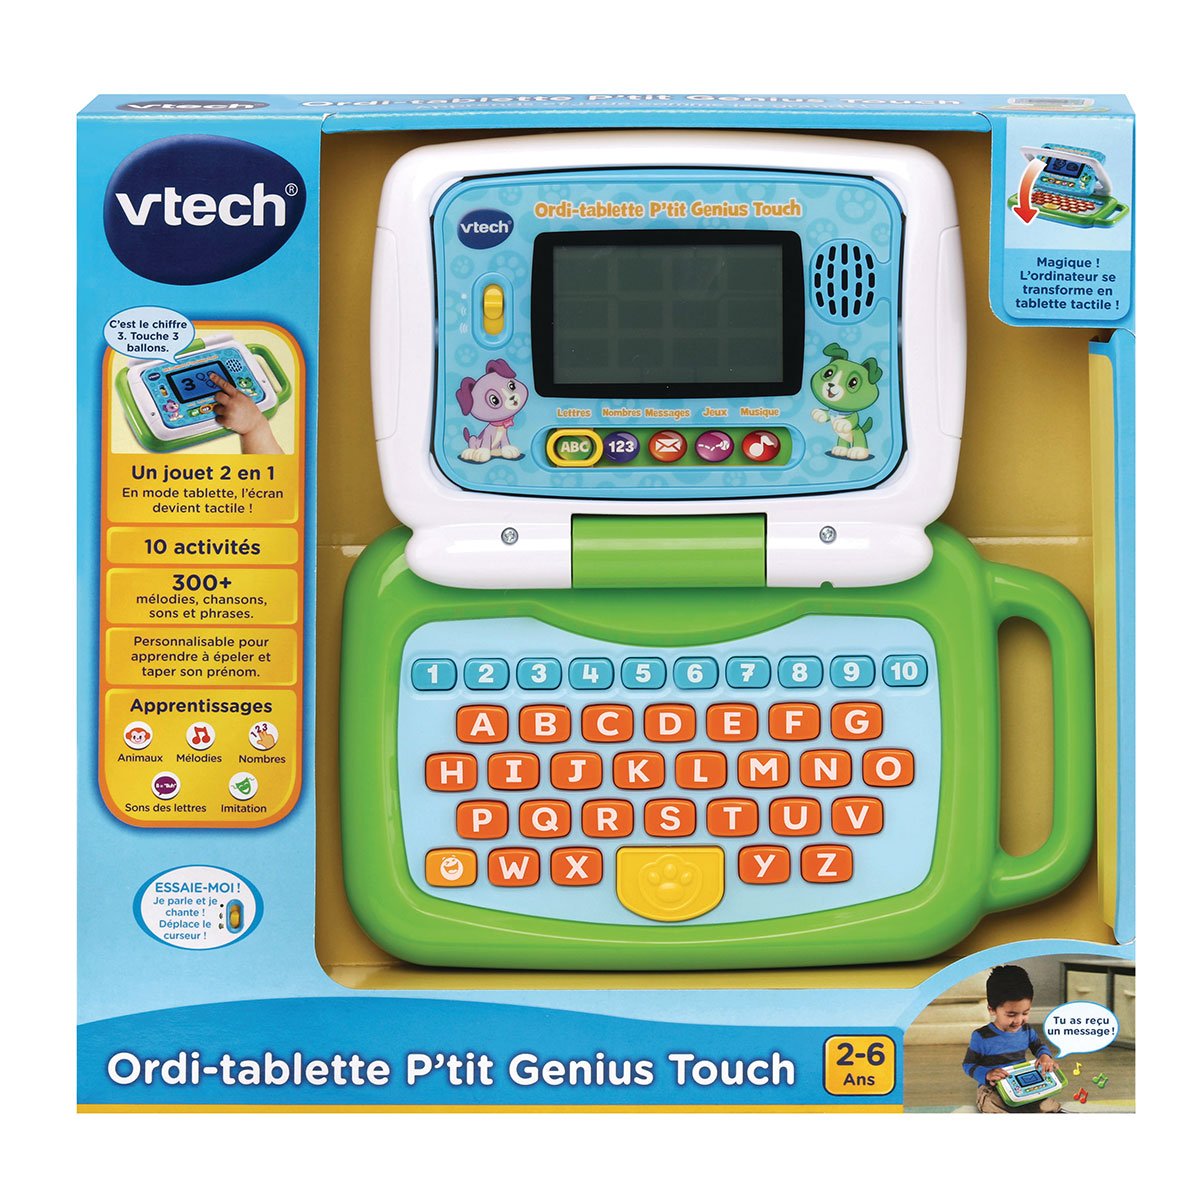 Vtech ordi-tablette petit Genius touch-bleu-2-6ans-vtech 80-600905 – Orca